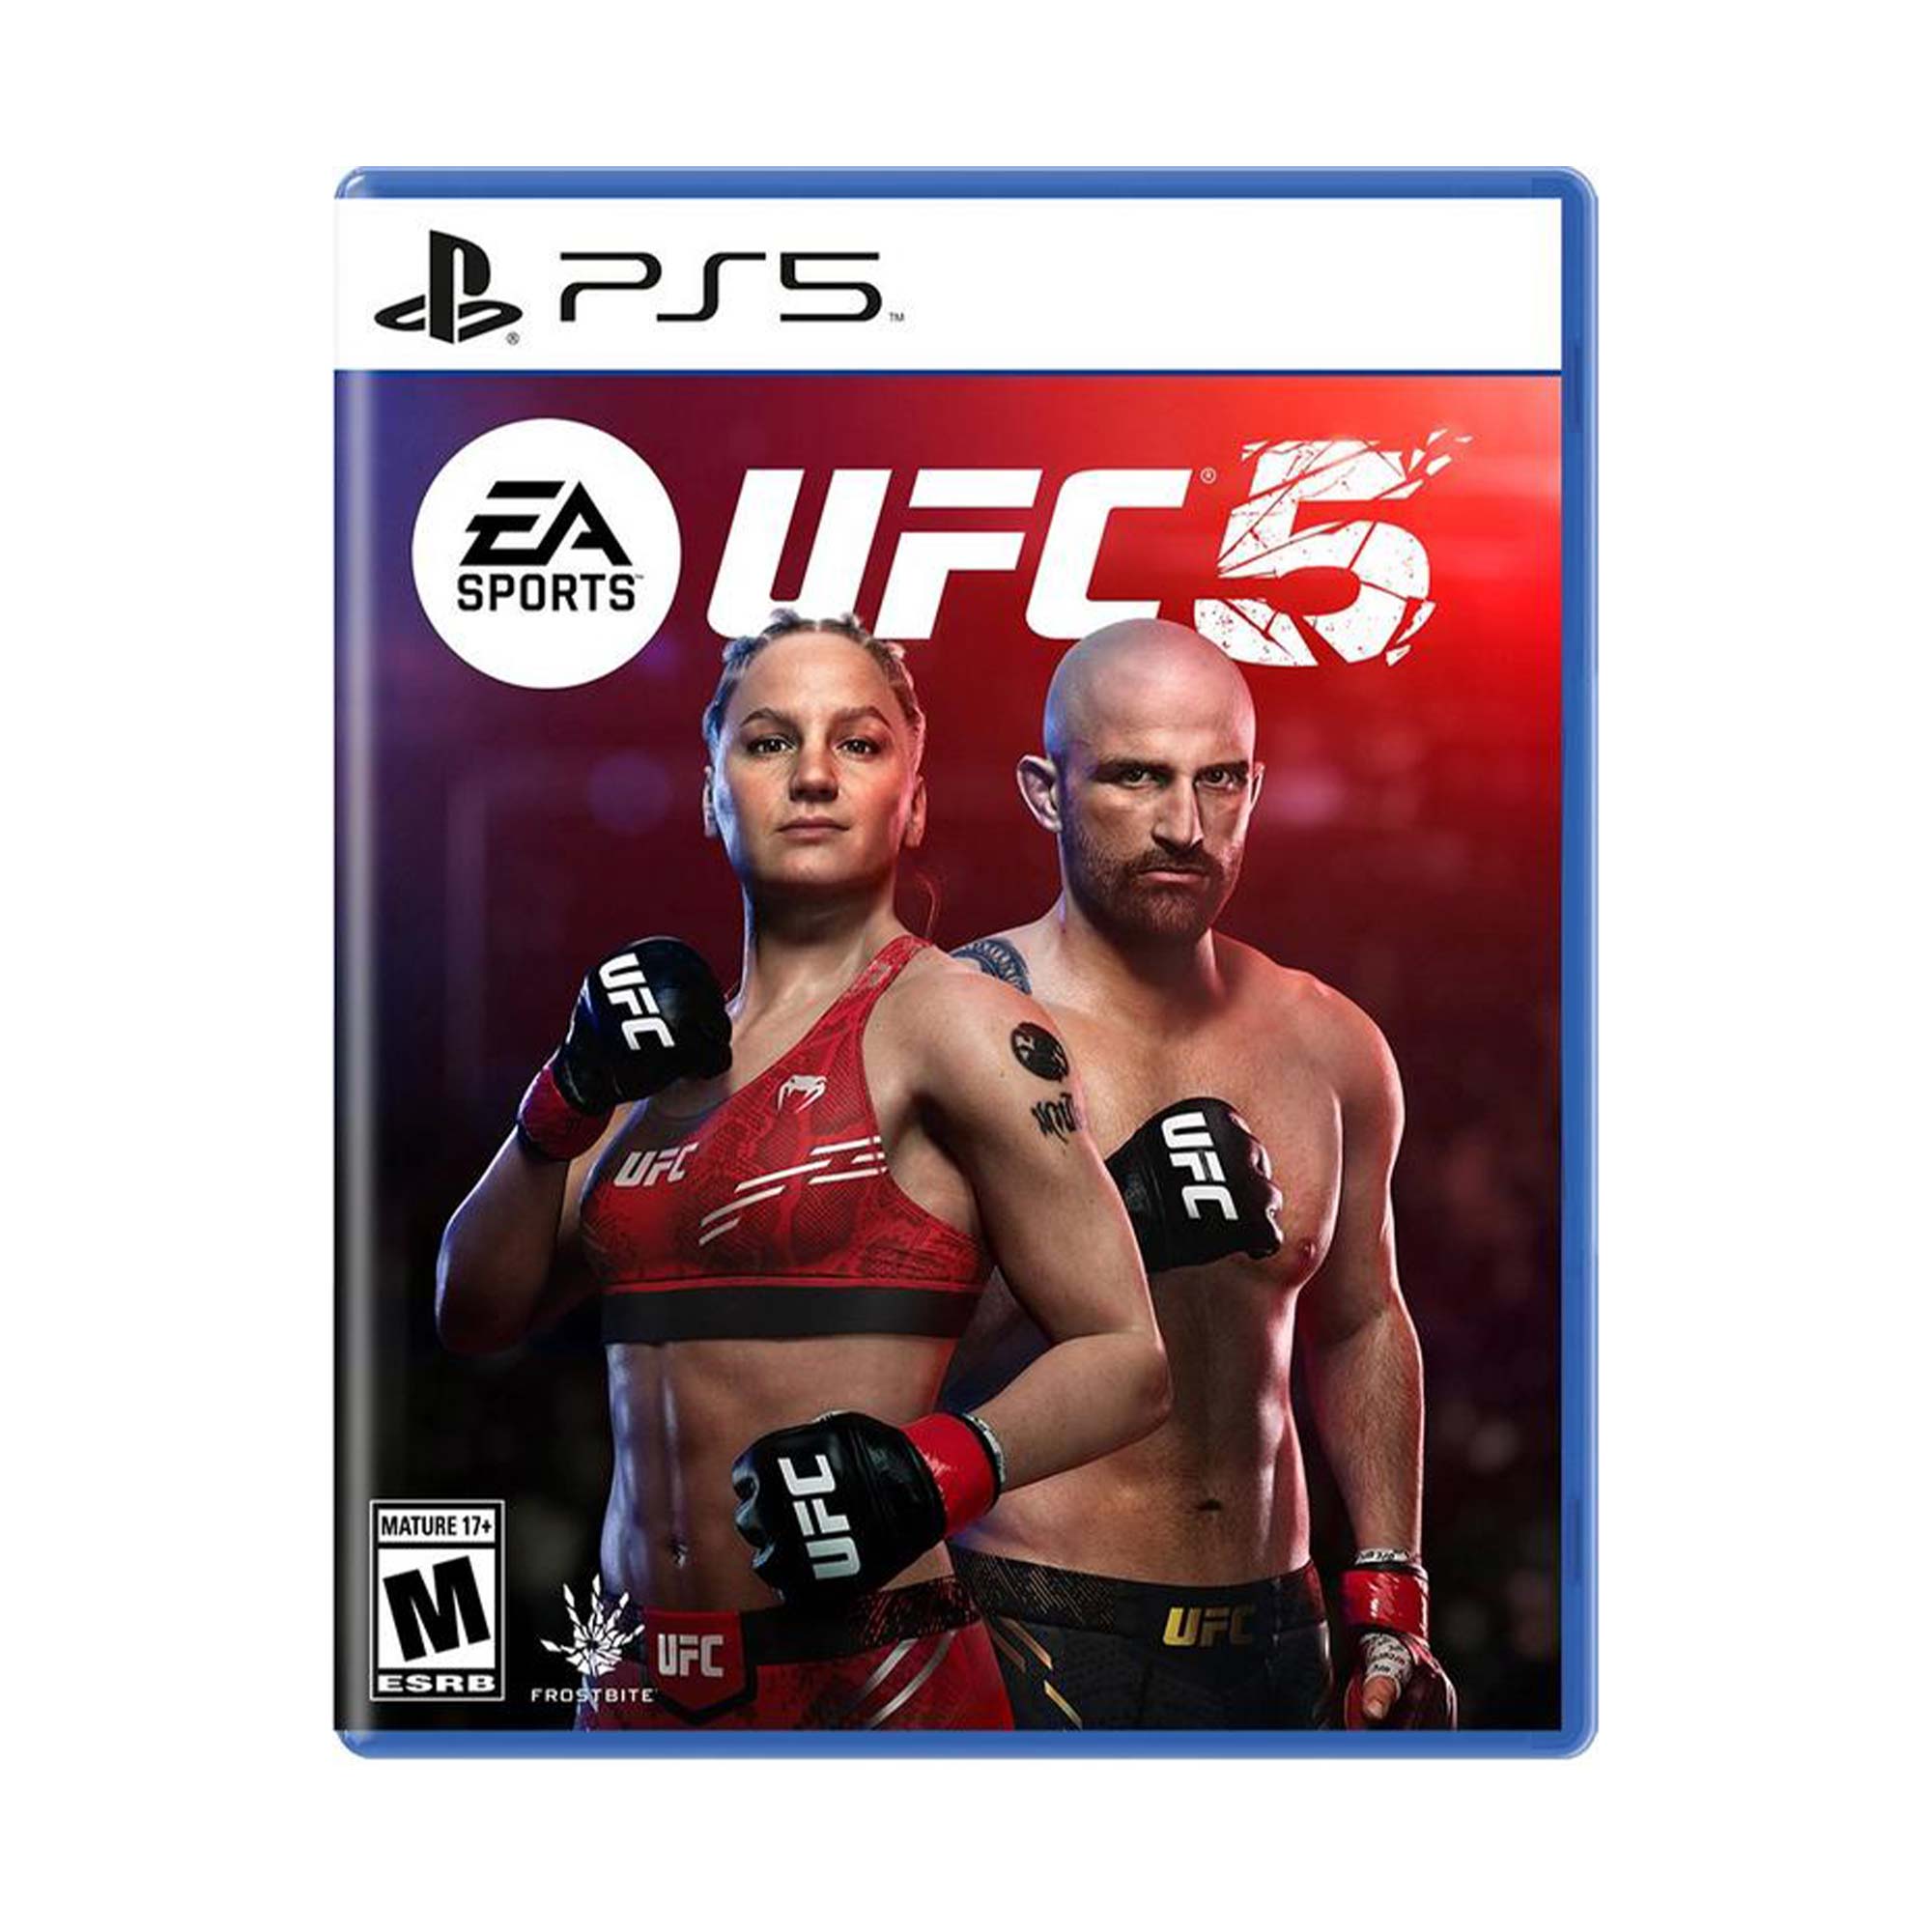 EA SPORTS UFC 5 PS5